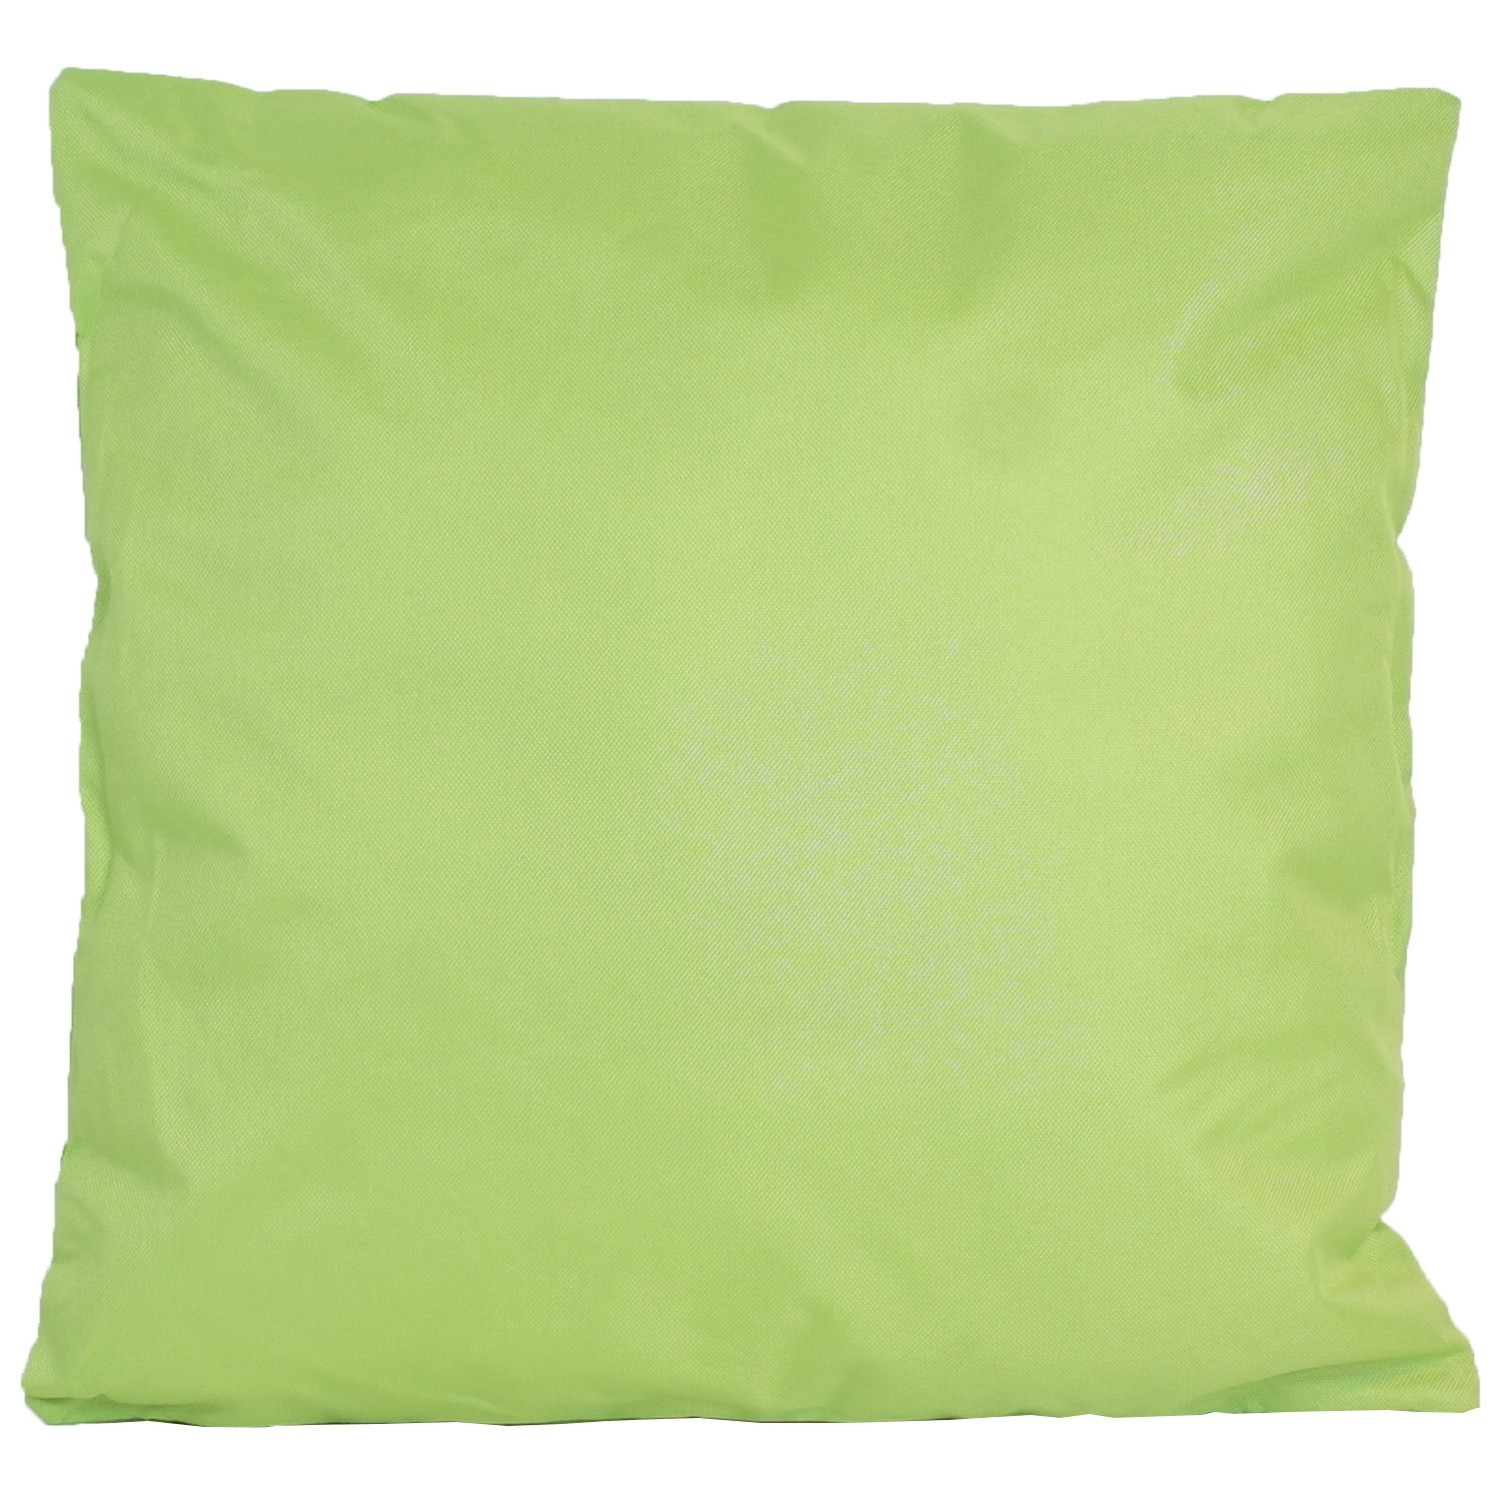 1x Bank/Sier kussens voor binnen en buiten in de kleur groen 45 x 45 cm